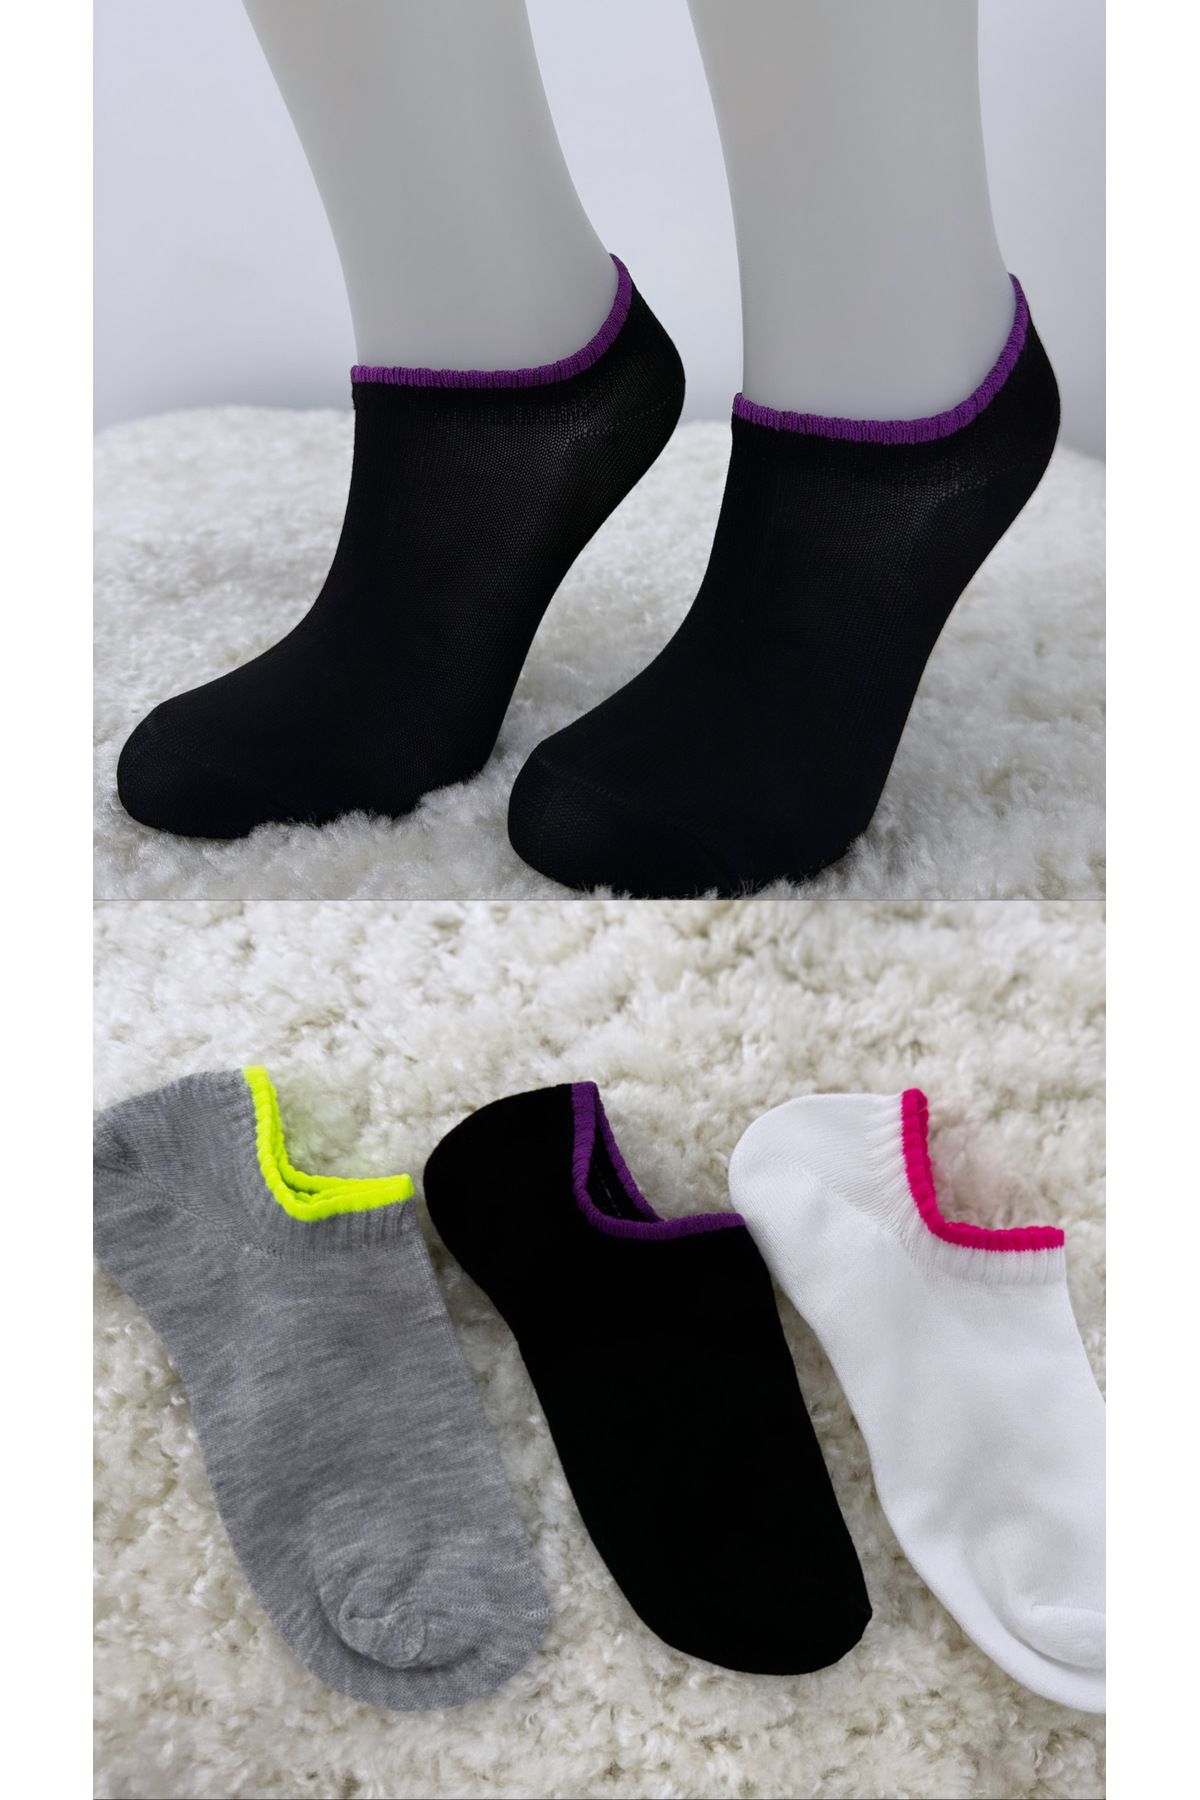 armonika Kadın Bilek Kısmı Renkli Kokulu Babet Çorap 3'lü Paket